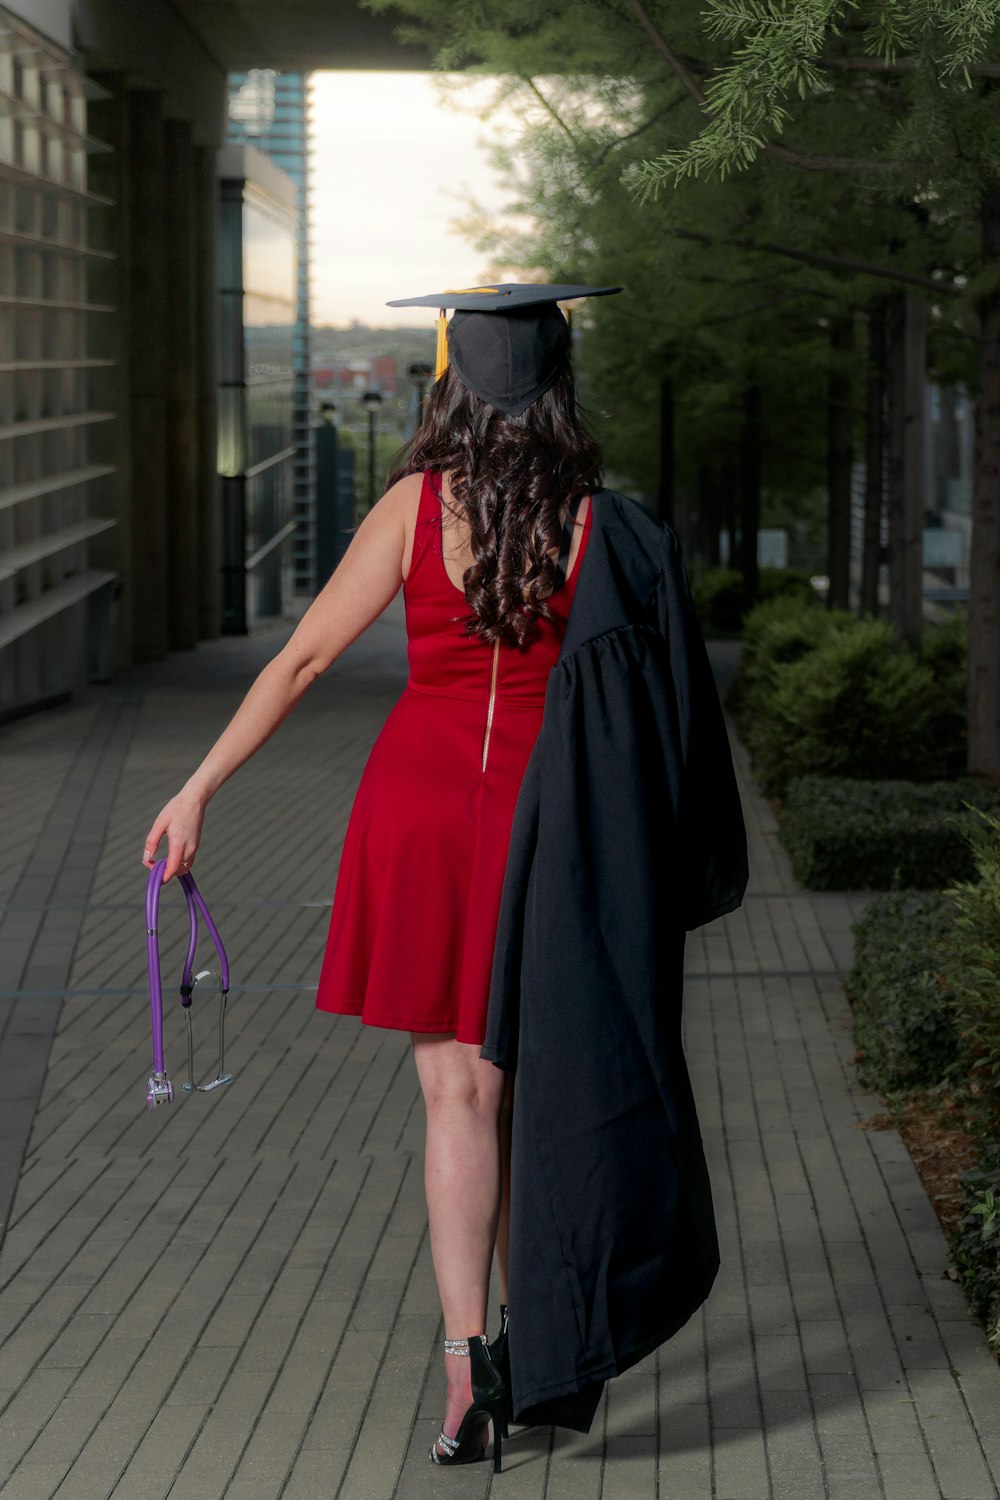 donna in abito senza maniche rosso che indossa cappello accademico nero